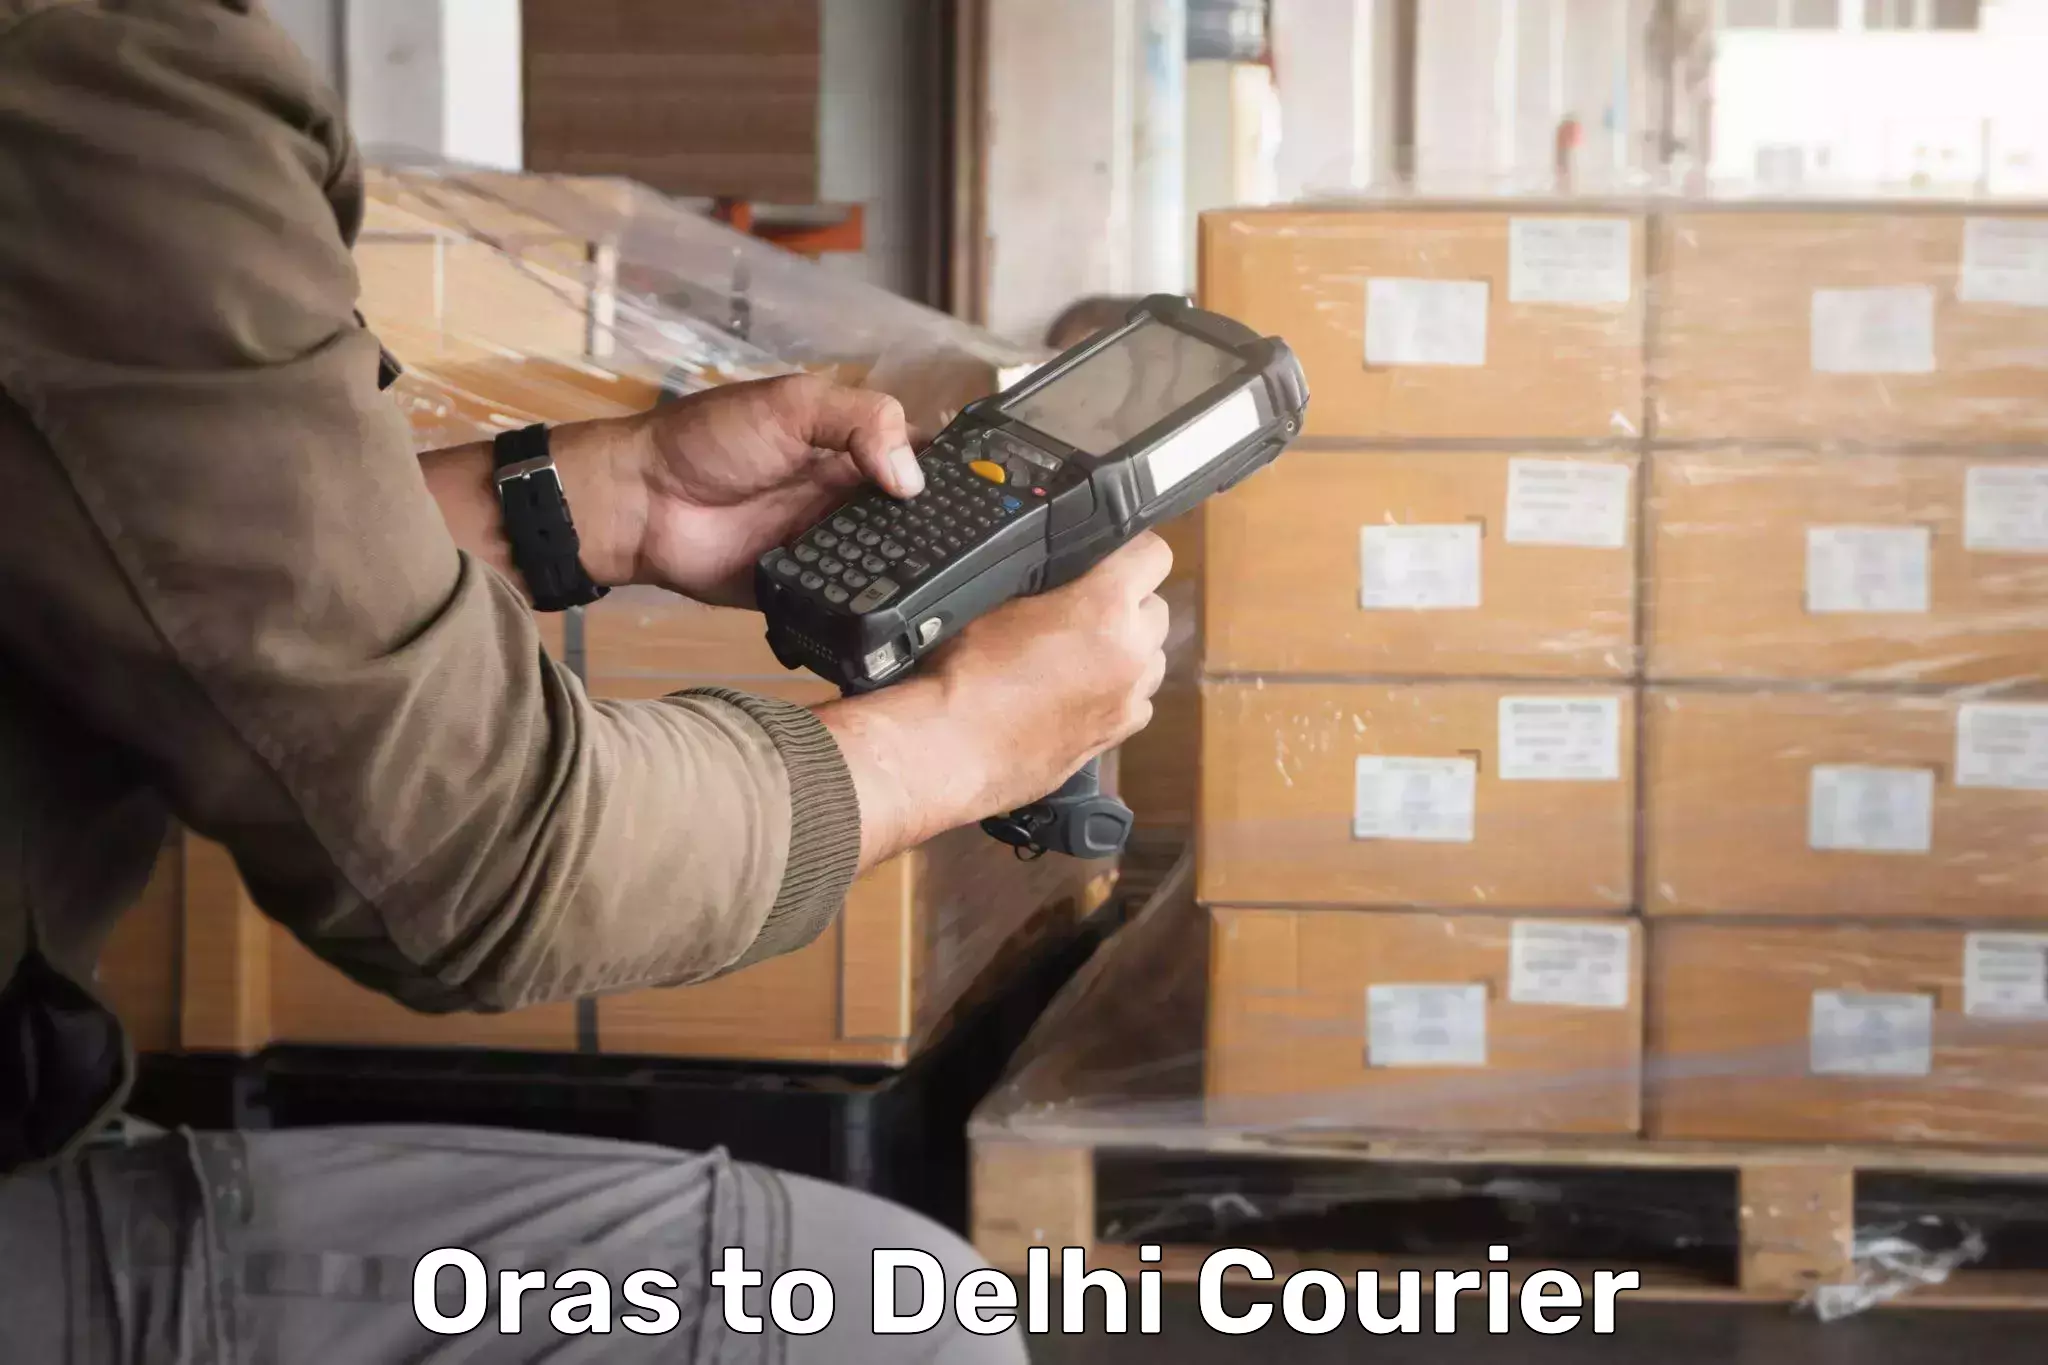 Bulk order courier Oras to Burari